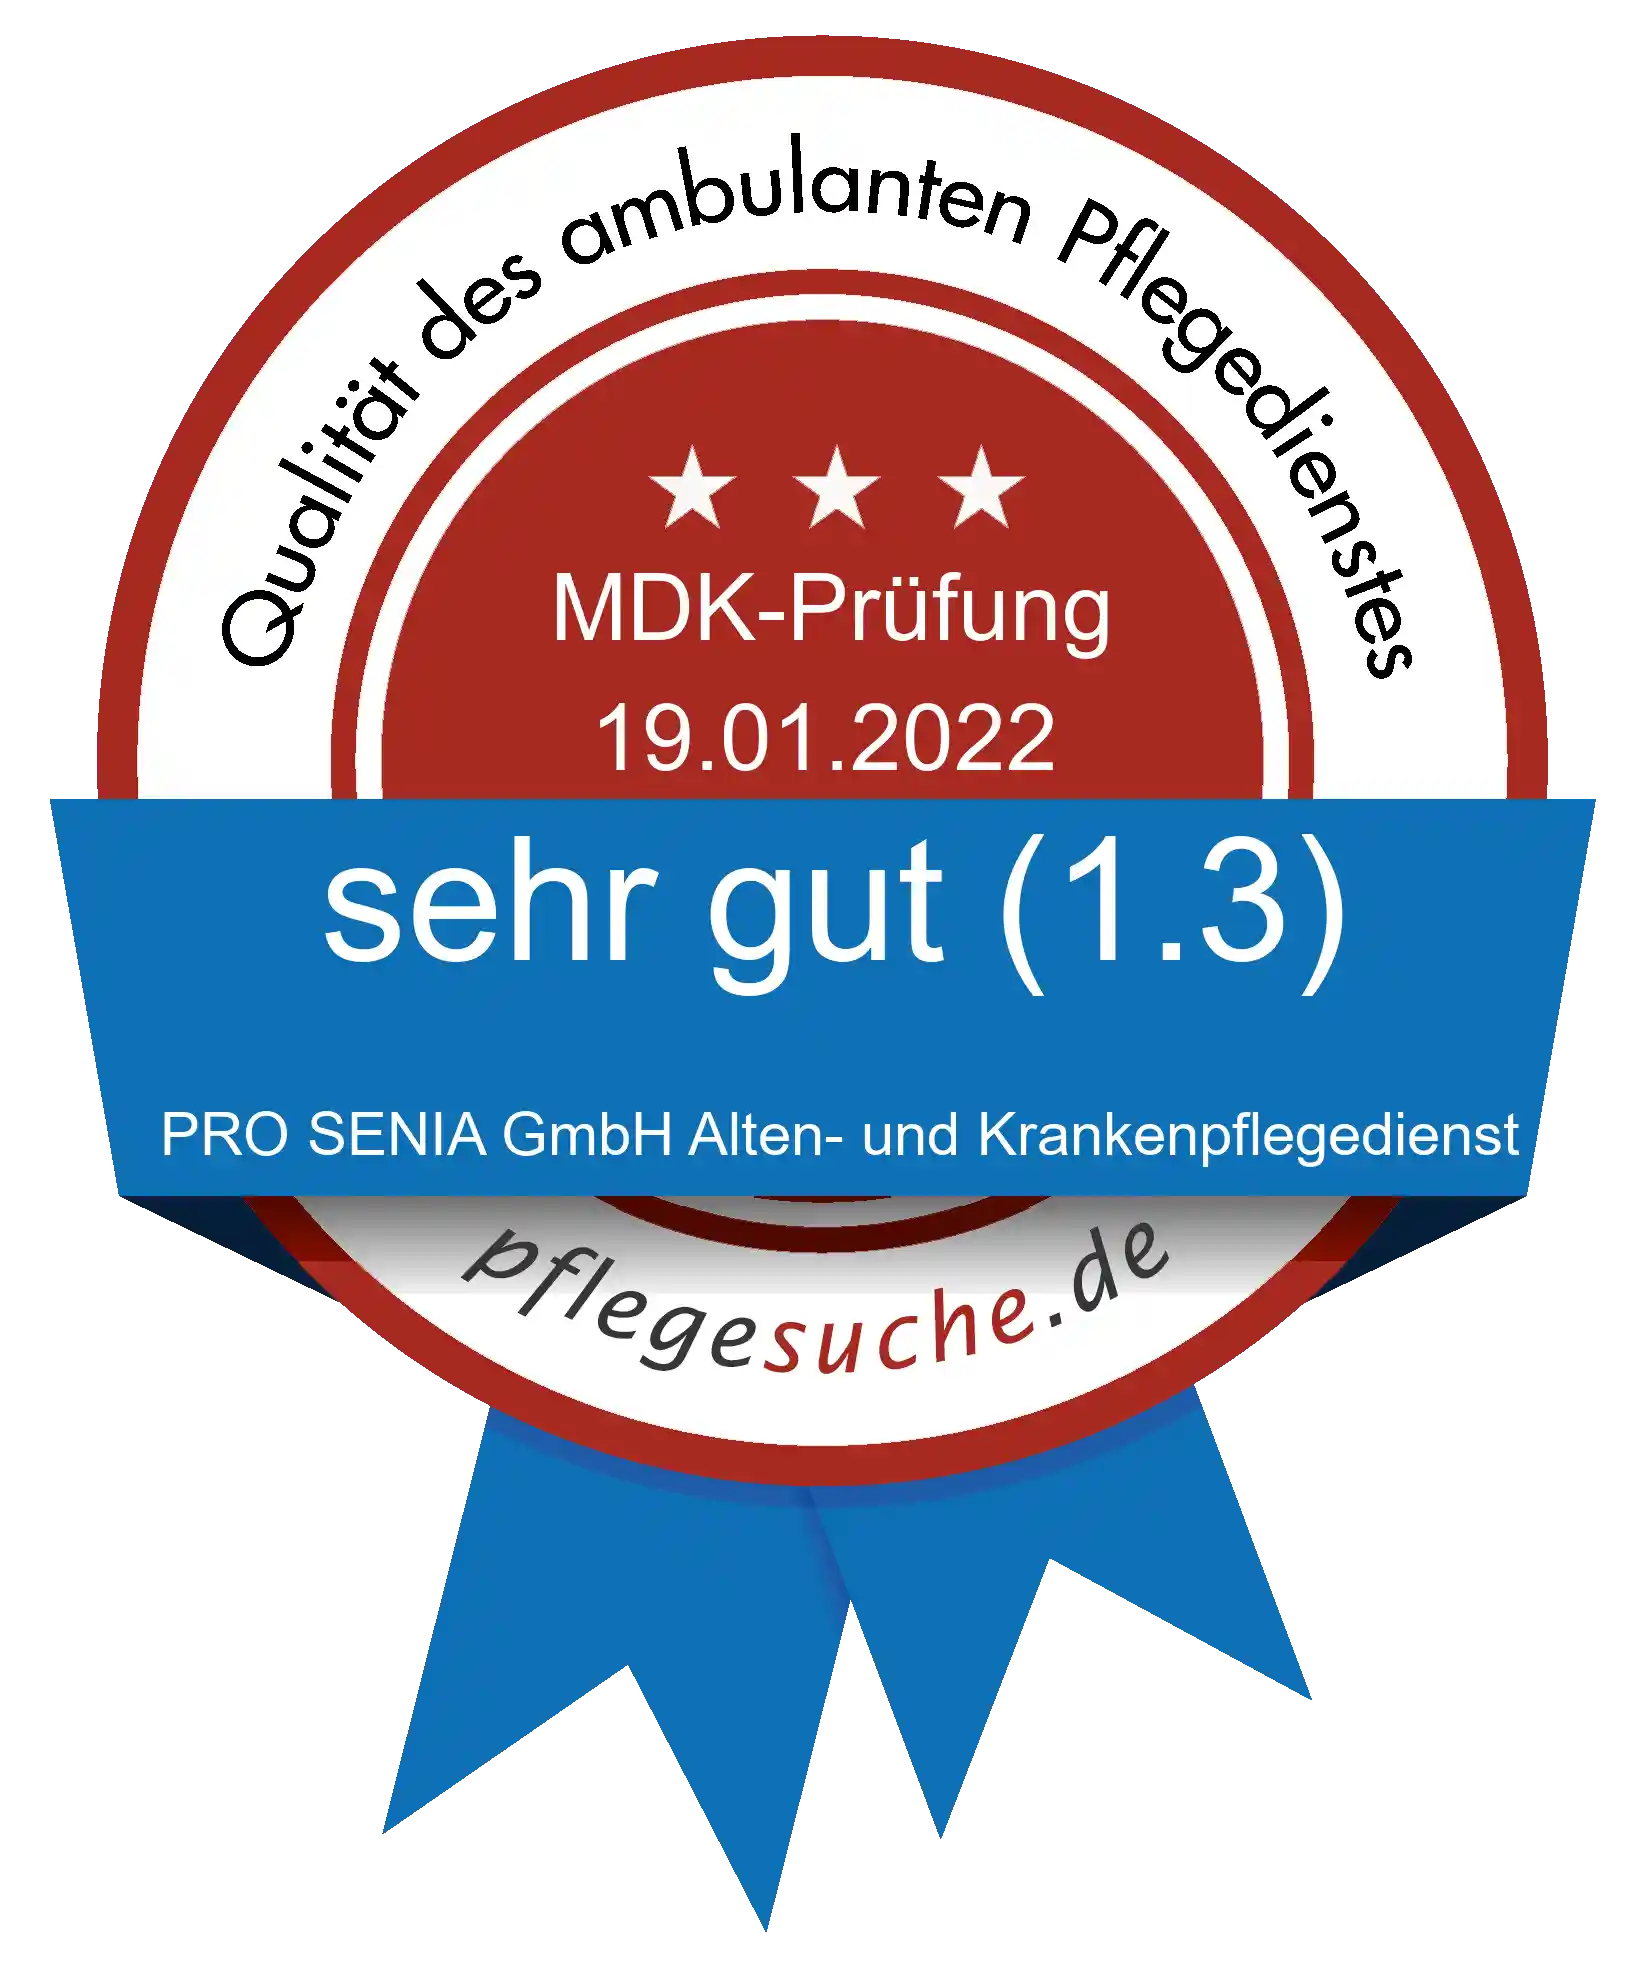 Siegel Benotung: PRO SENIA GmbH Alten- und Krankenpflegedienst